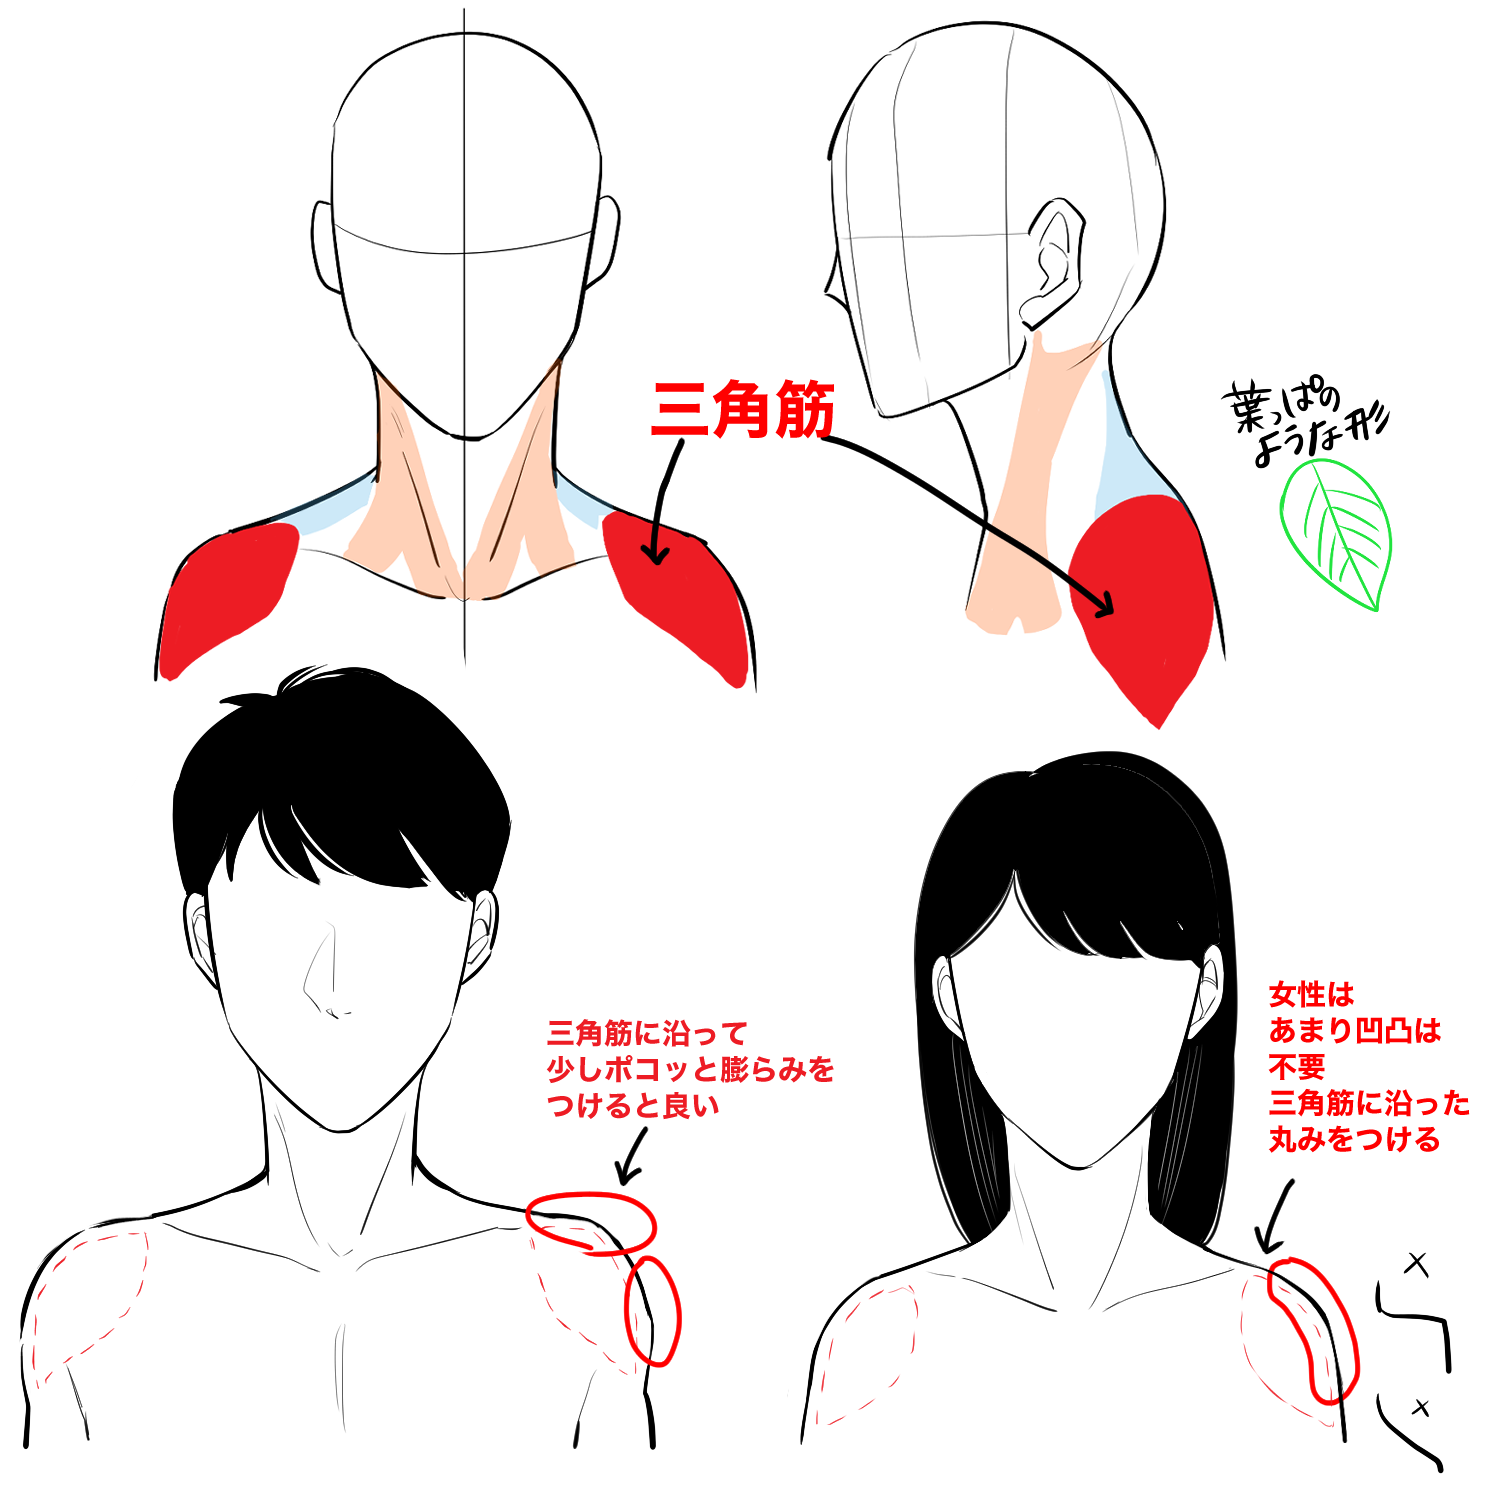 初心者向け 肩の描き方を学ぼう Medibang Paint 無料のイラスト マンガ制作ツール